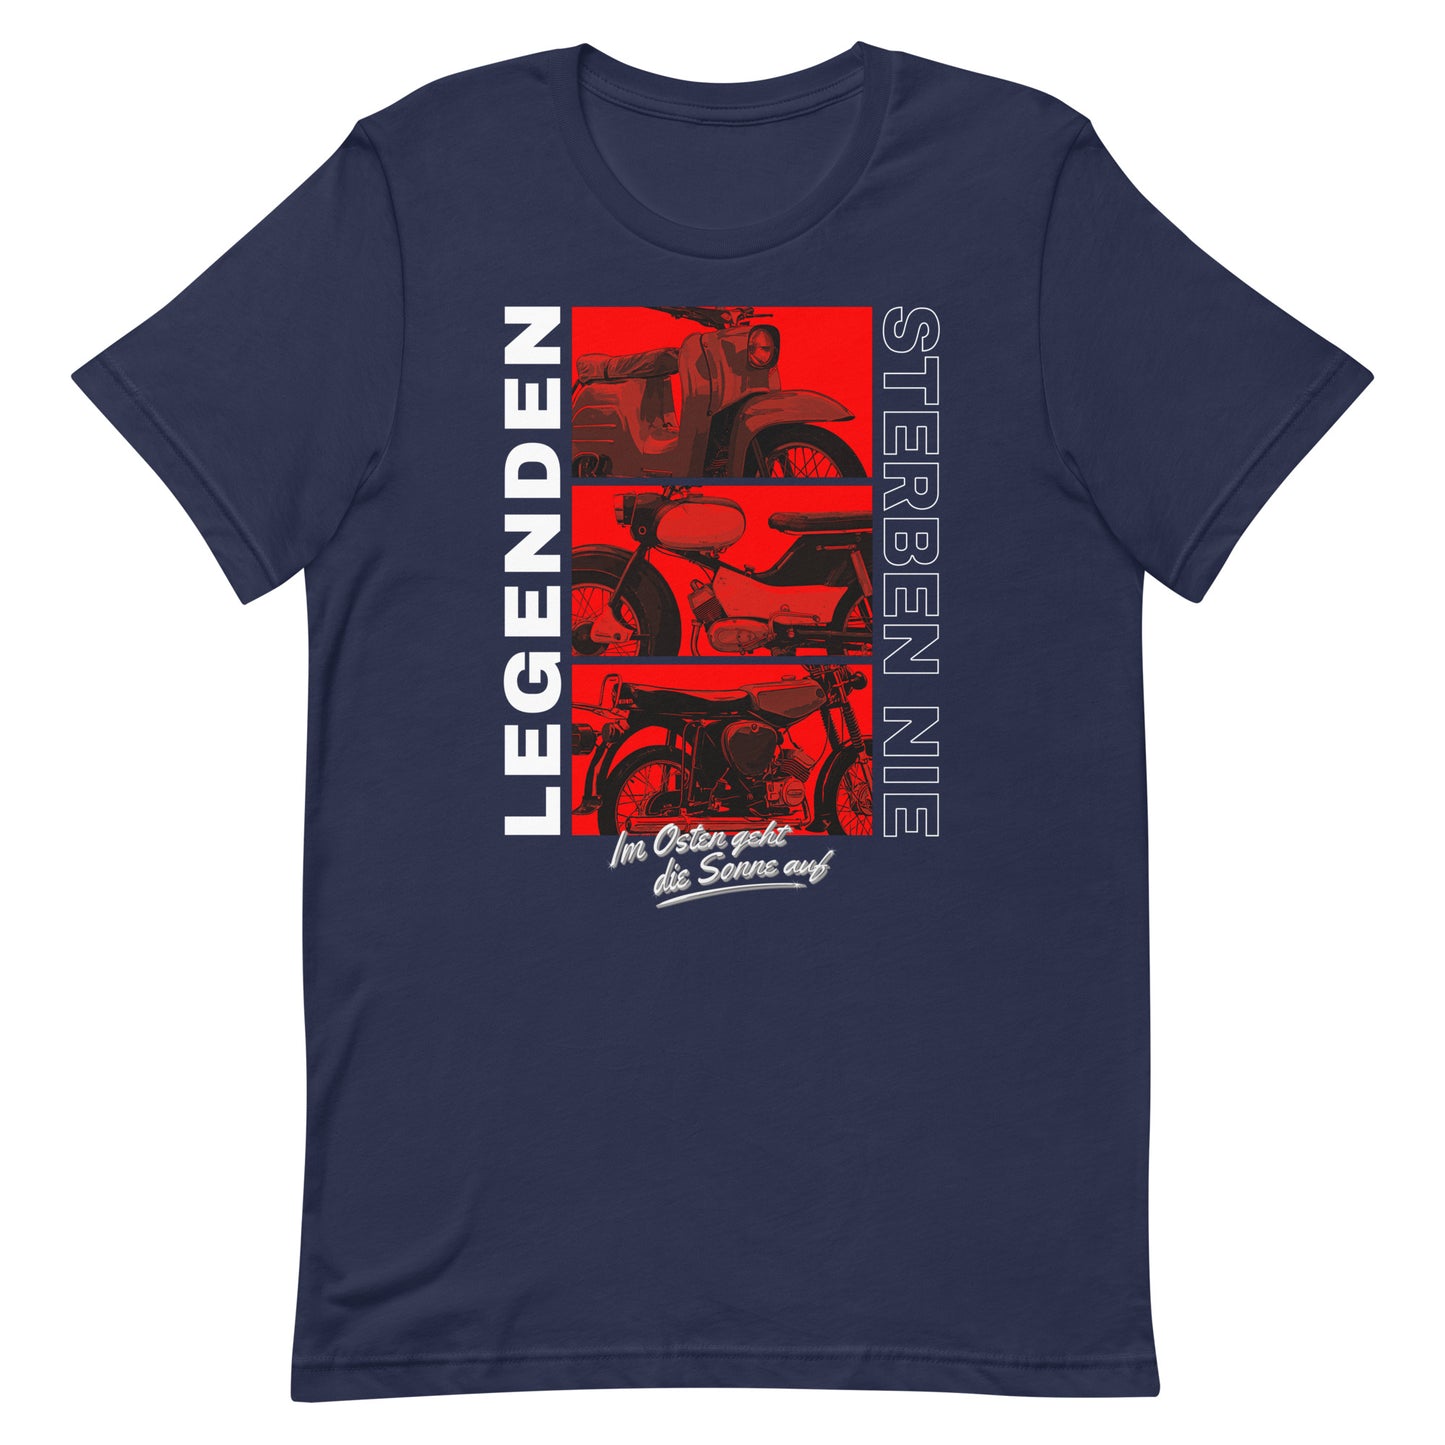 Simson Legenden sterben nie - Rot - Unisex T-Shirt